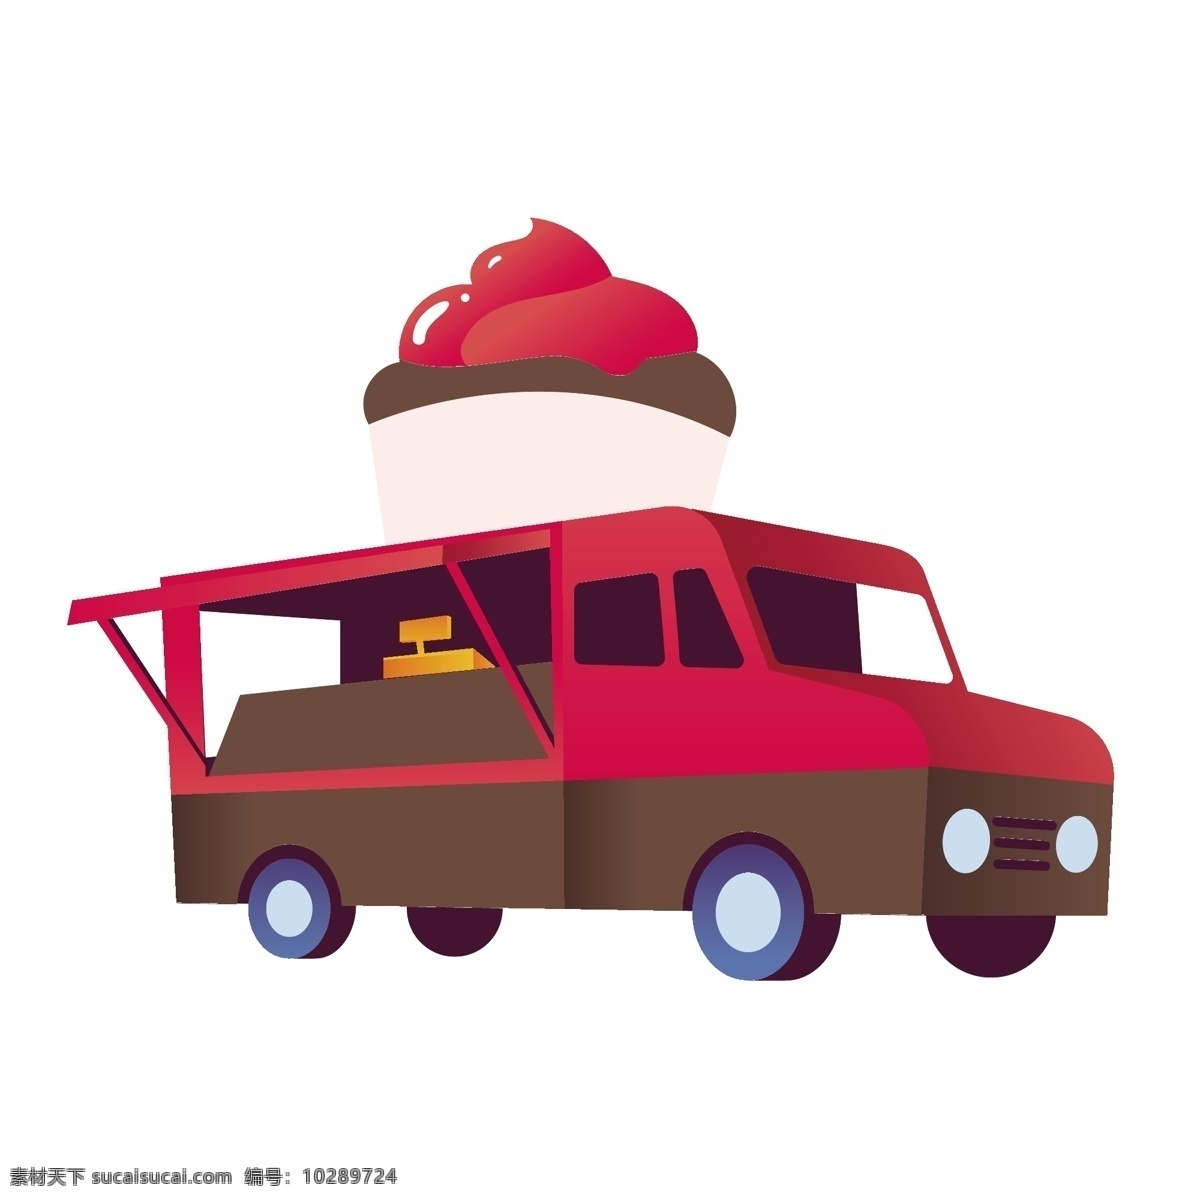 卡通 可爱 冰淇淋 车 矢量 可爱冰淇淋车 冰淇淋快餐车 快餐车 可爱的快餐车 红色 红色的快餐车